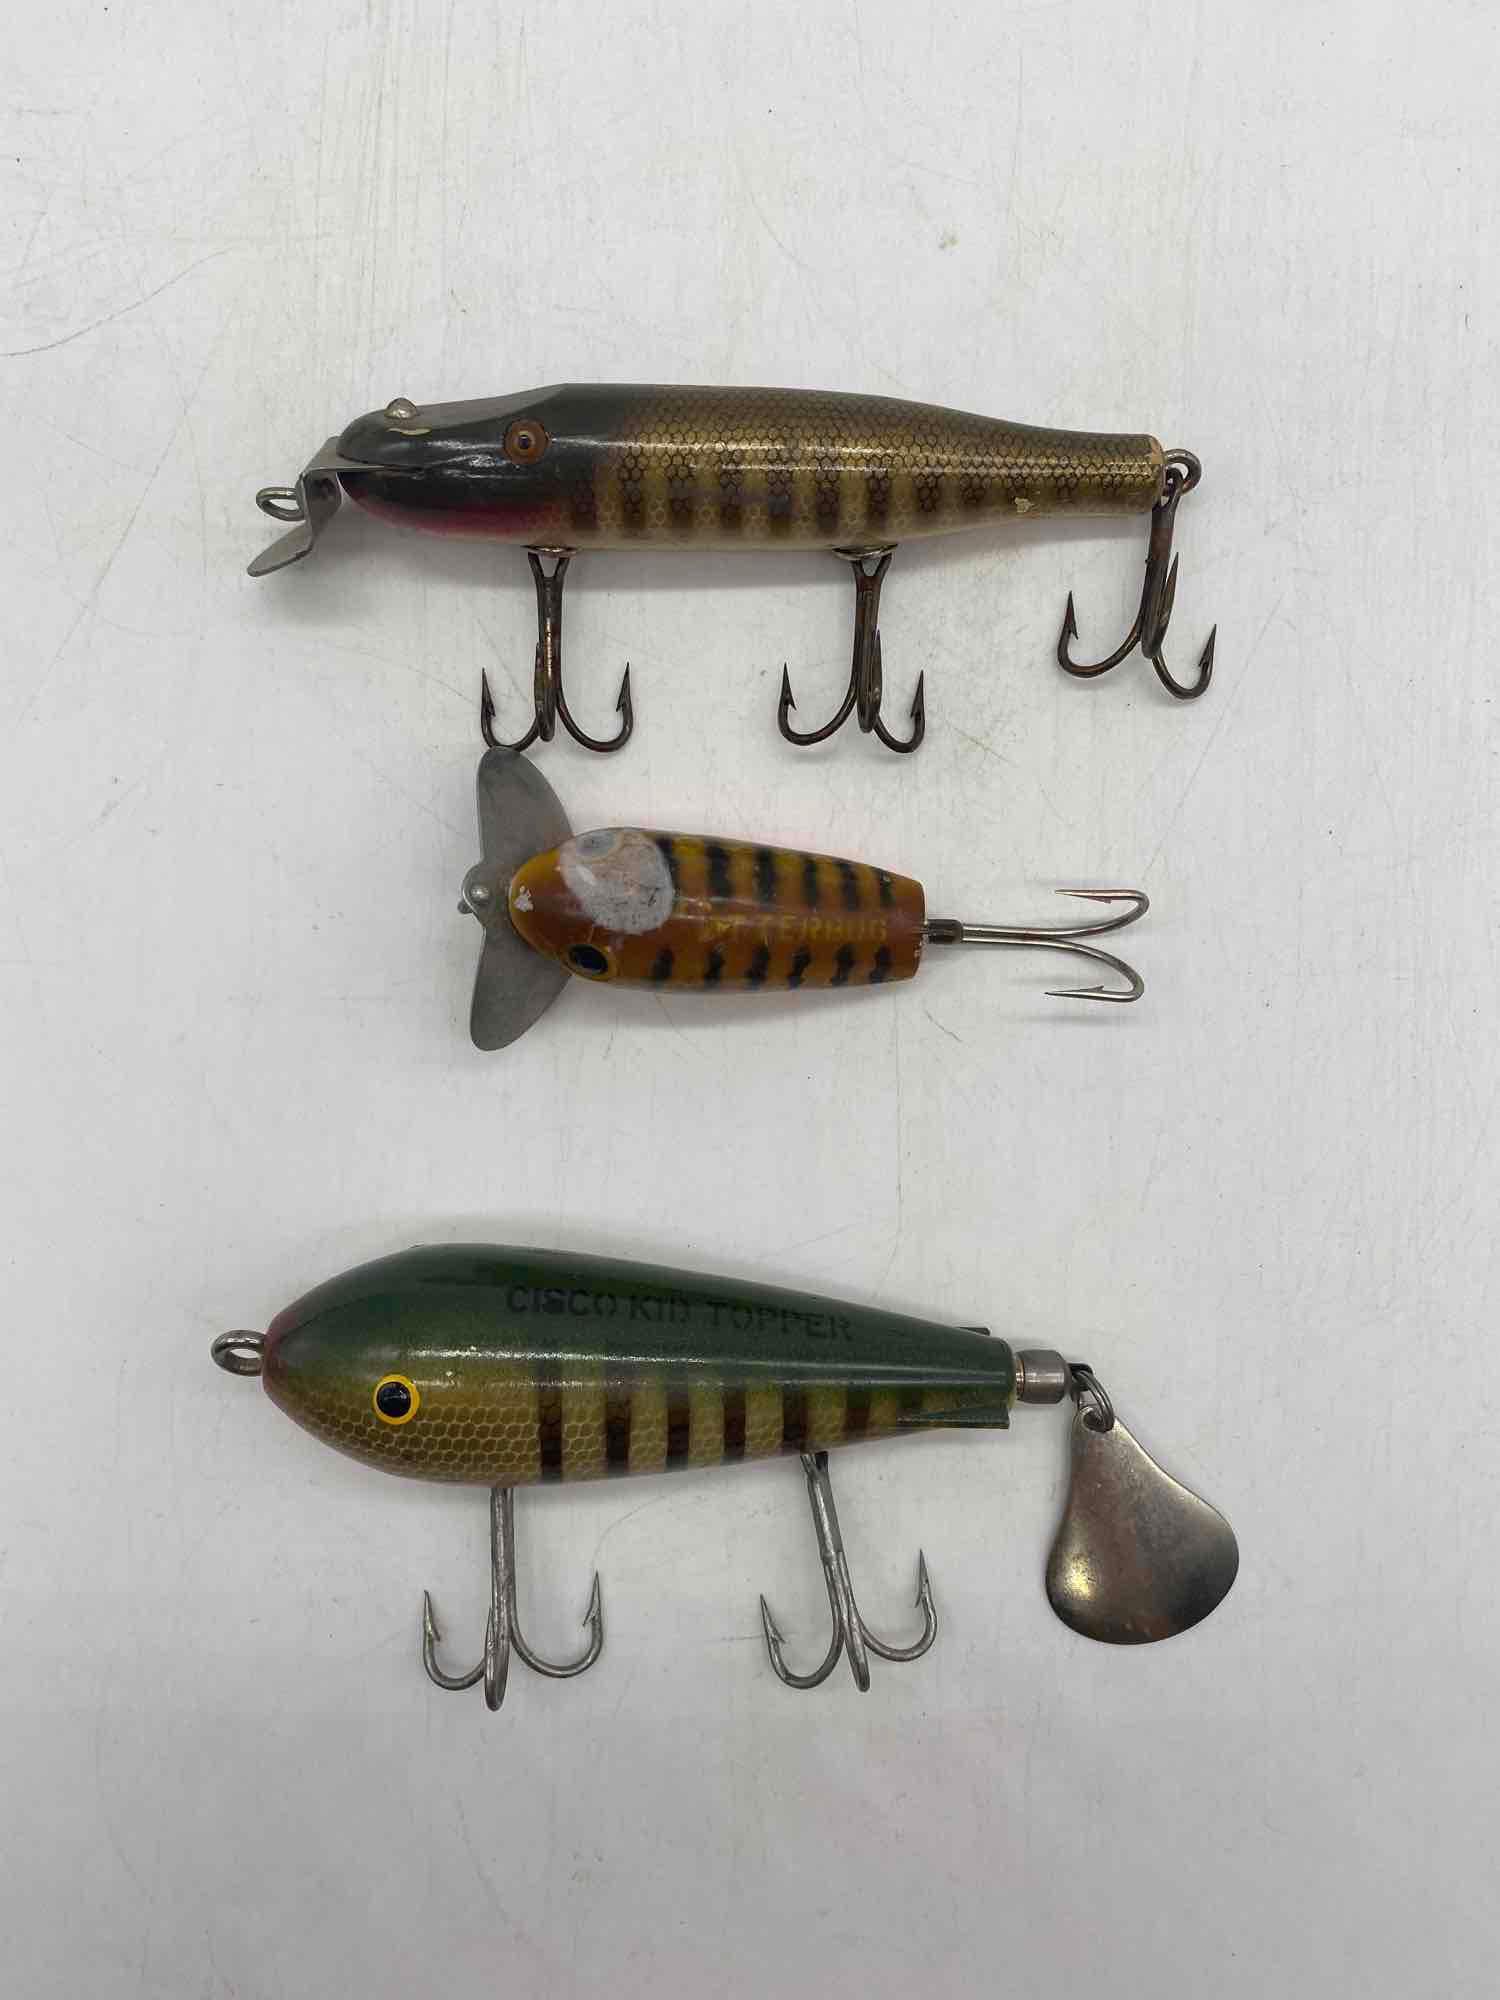 Three Fishing Lures (Jitterbug & Cisco Kid)